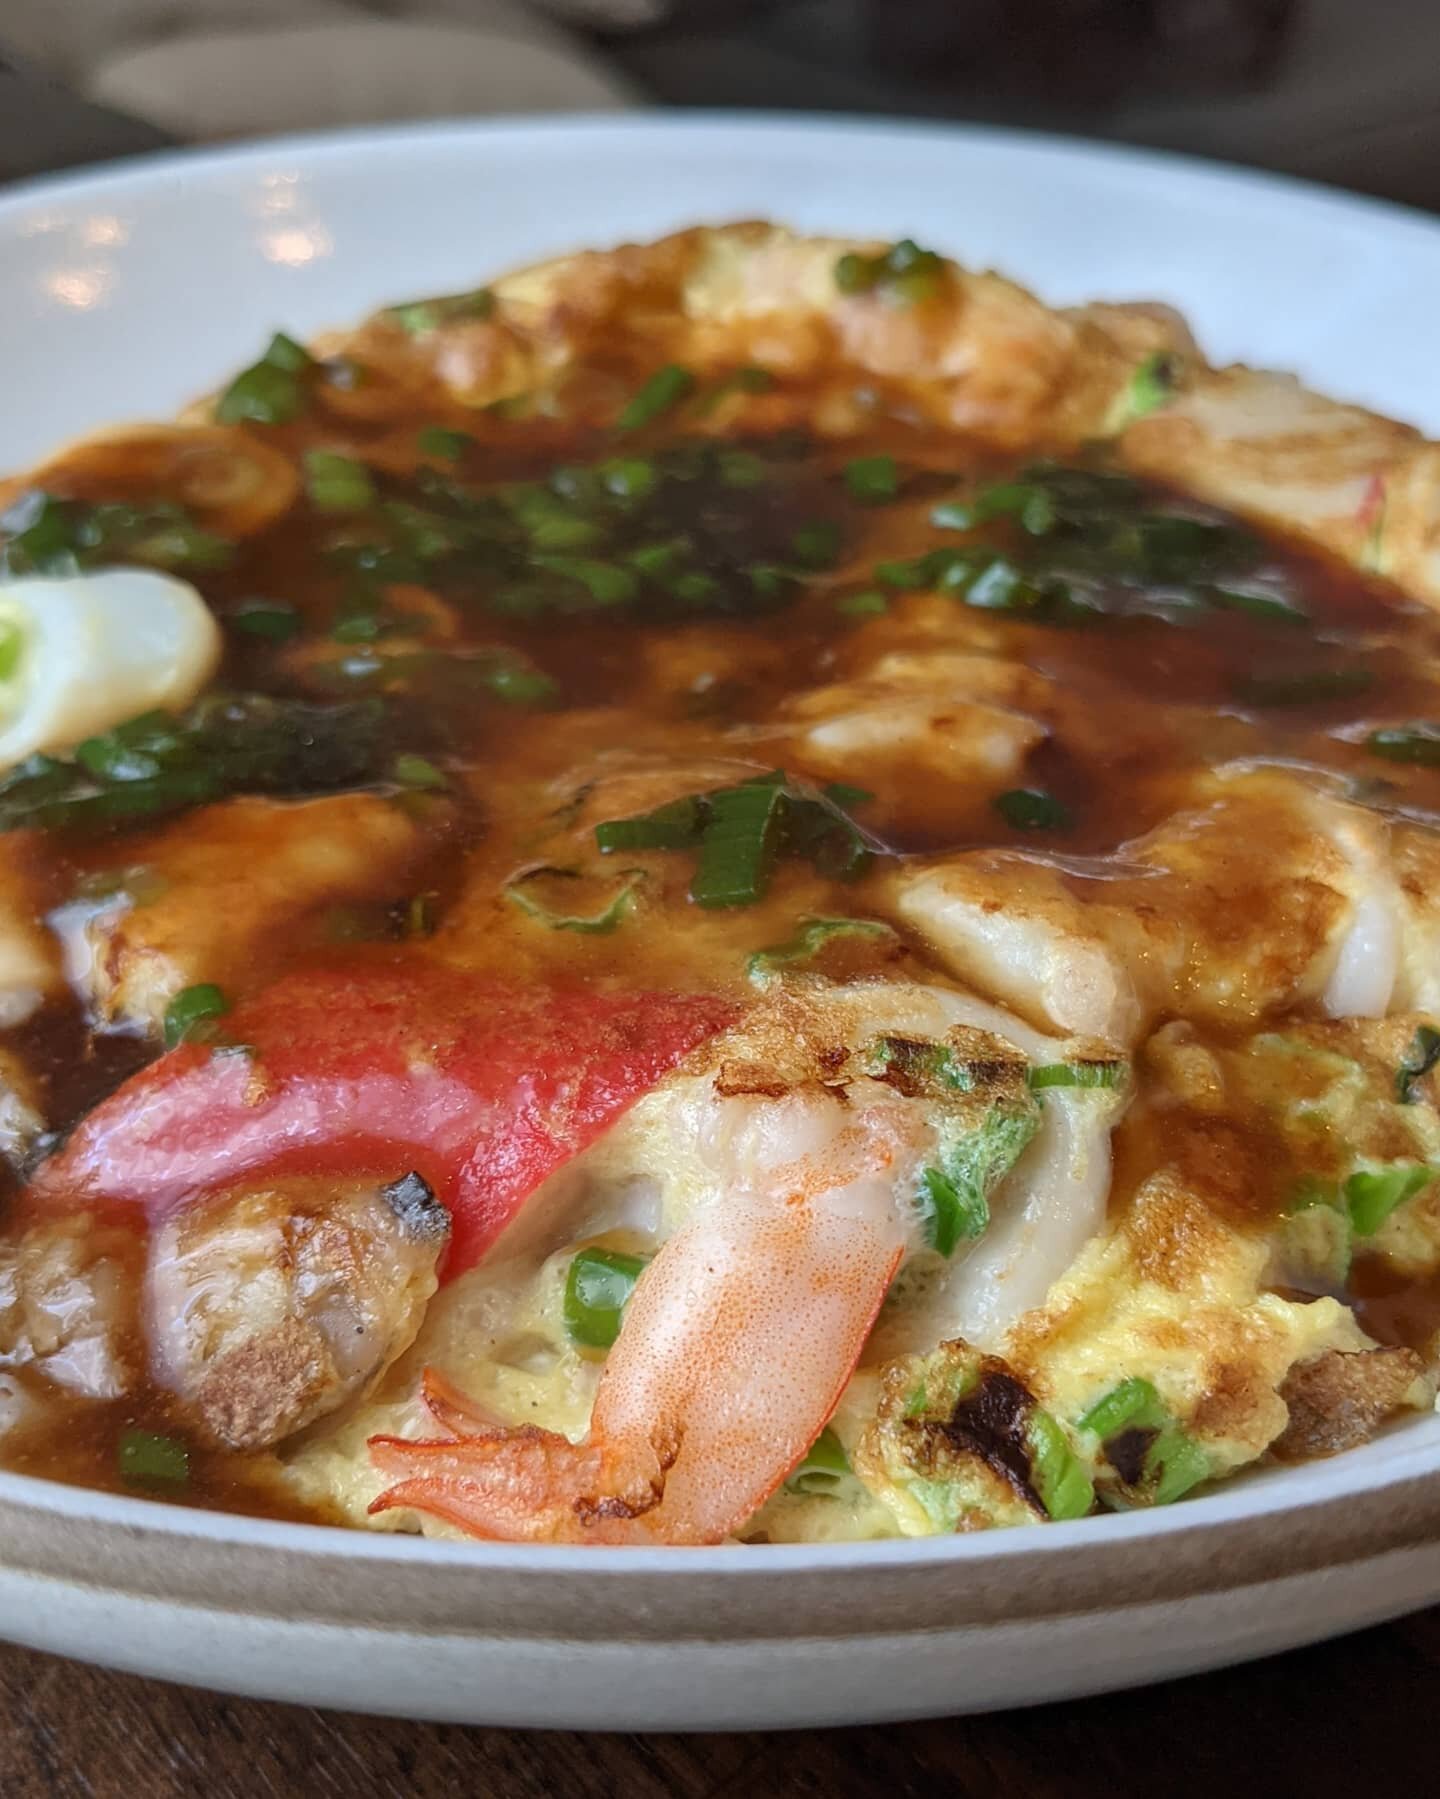 天津丼 Tenshindon - aka my take on a Japanese take on Chinese food 😂. Basically a seafood omelette over rice with a thickened sauce that is simultaneously Japanese (dashi) and Chinese (white pepper, sesame oil)